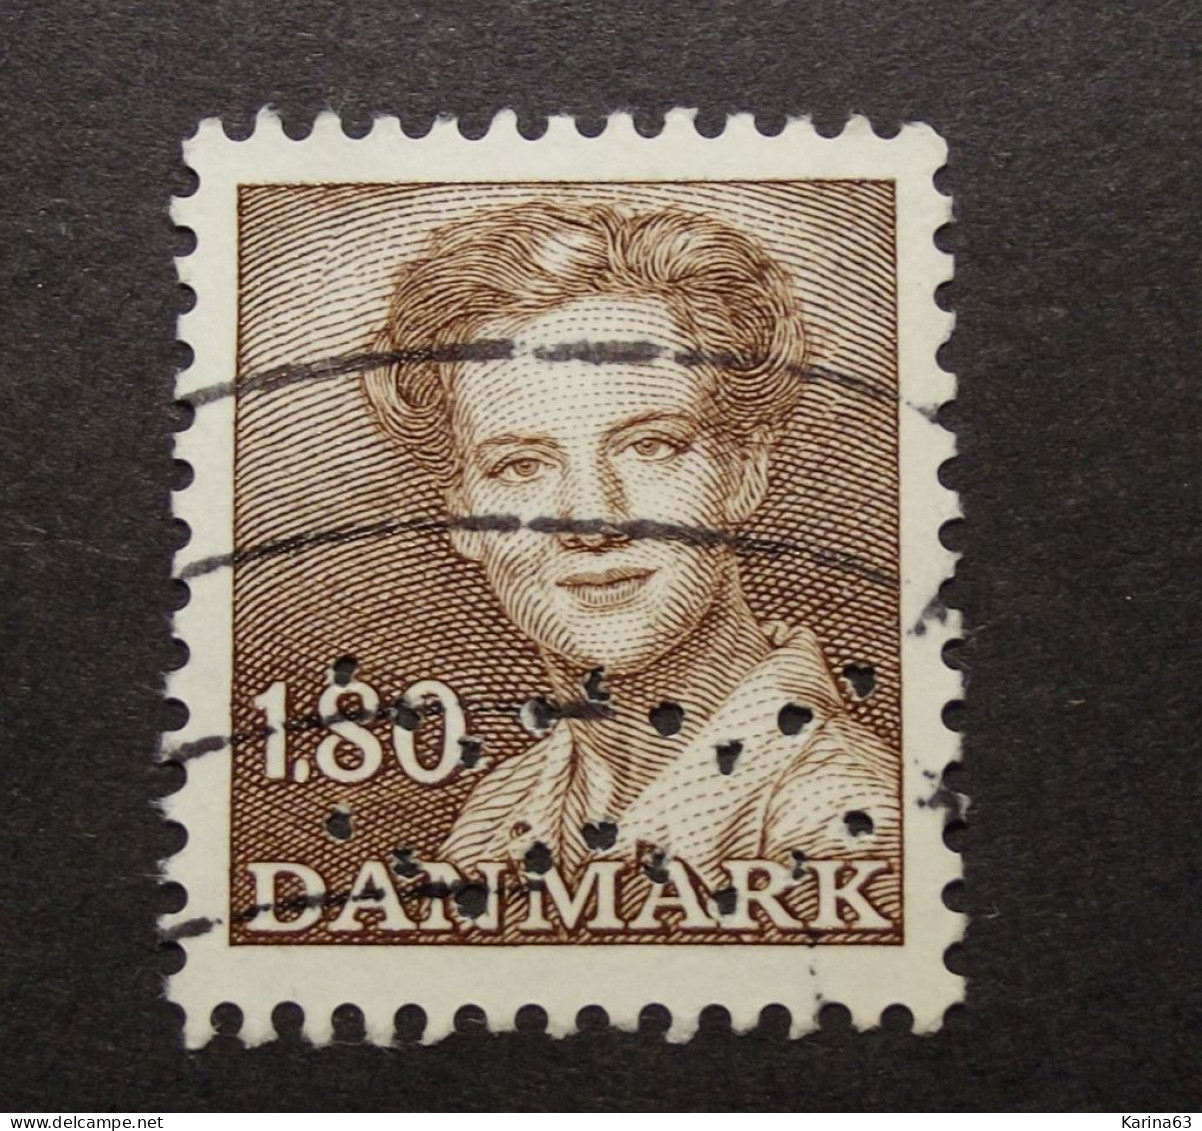 Denmark  - Danemark - 1975 - ( Queen Margrethe ) Perfin - Lochung -  Waves - Kobenhavns Kommune - Cancelled - Oblitérés